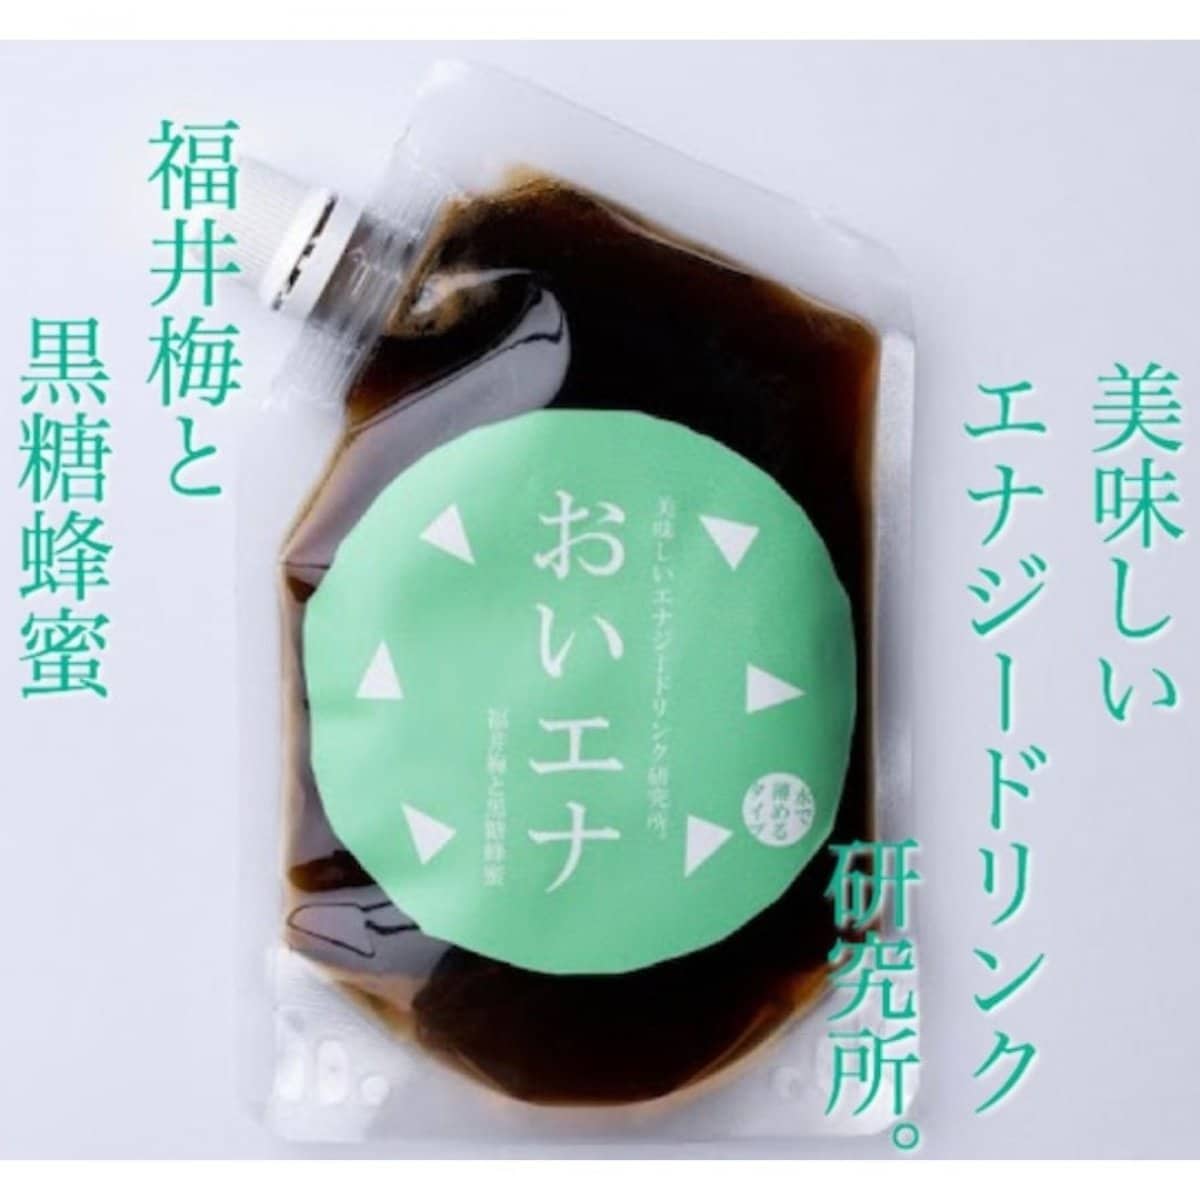 美味しいエナジードリンク研究所。福井梅と黒糖蜂蜜。